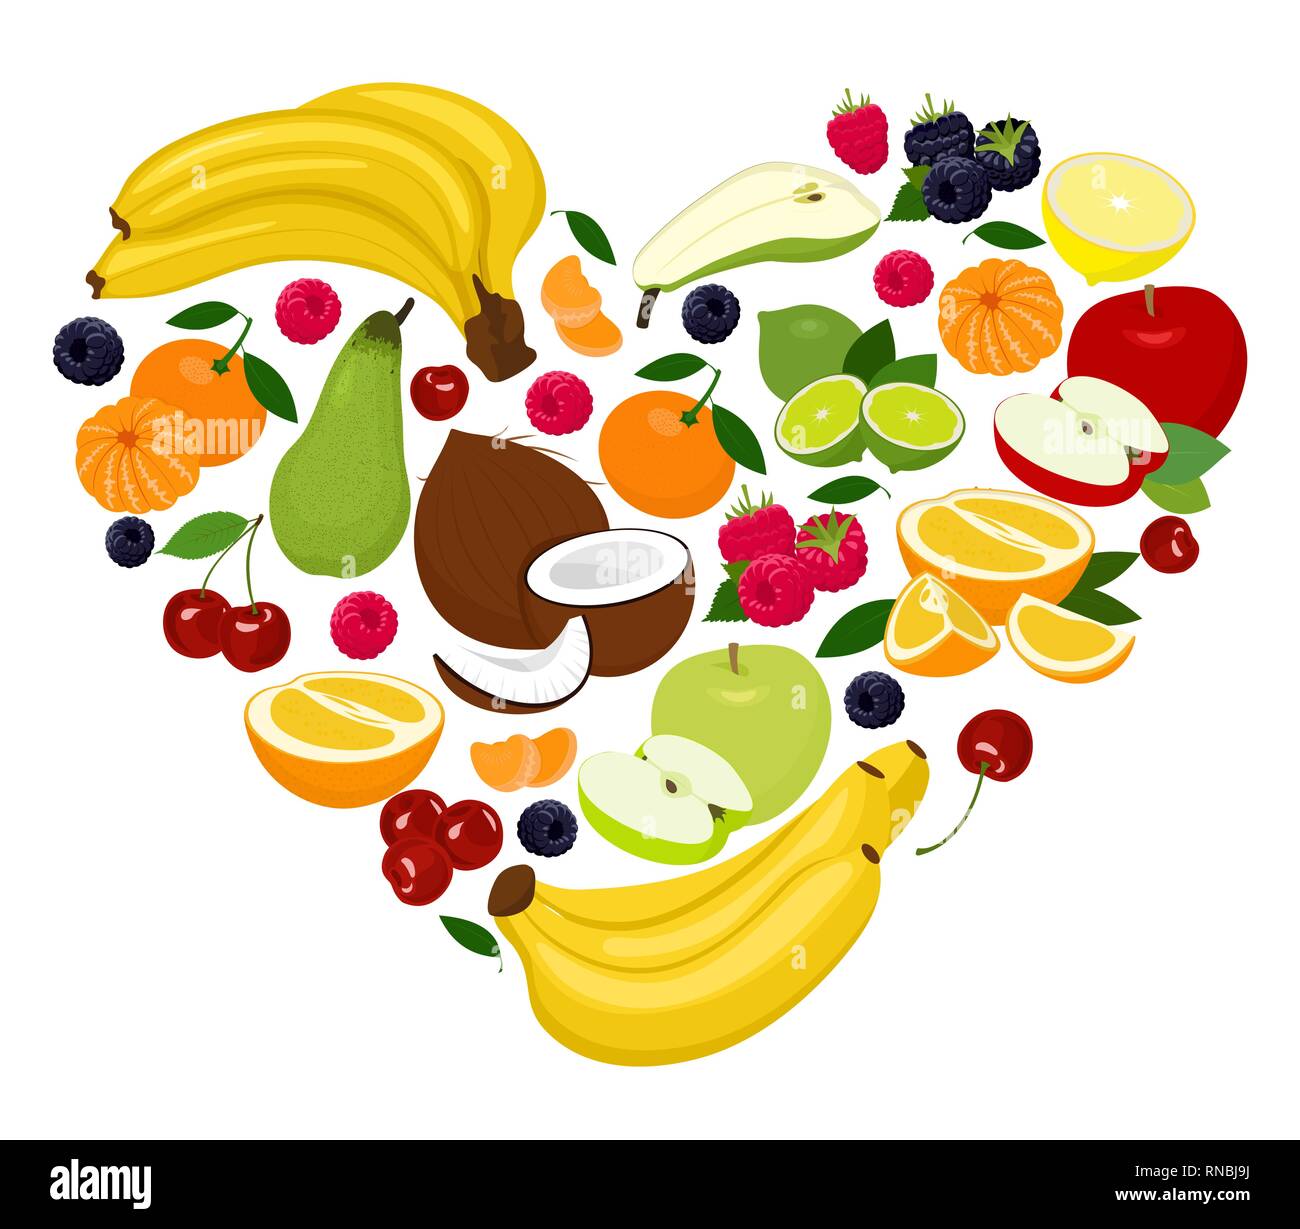 Herzform durch verschiedene Früchte. Herzen von Kokosnuss, Birne, Kalk, Himbeere, Brombeere, Apfel, Kirsche, Mandarine, Banane, Orange, Grapefruit. Vektor Stock Vektor